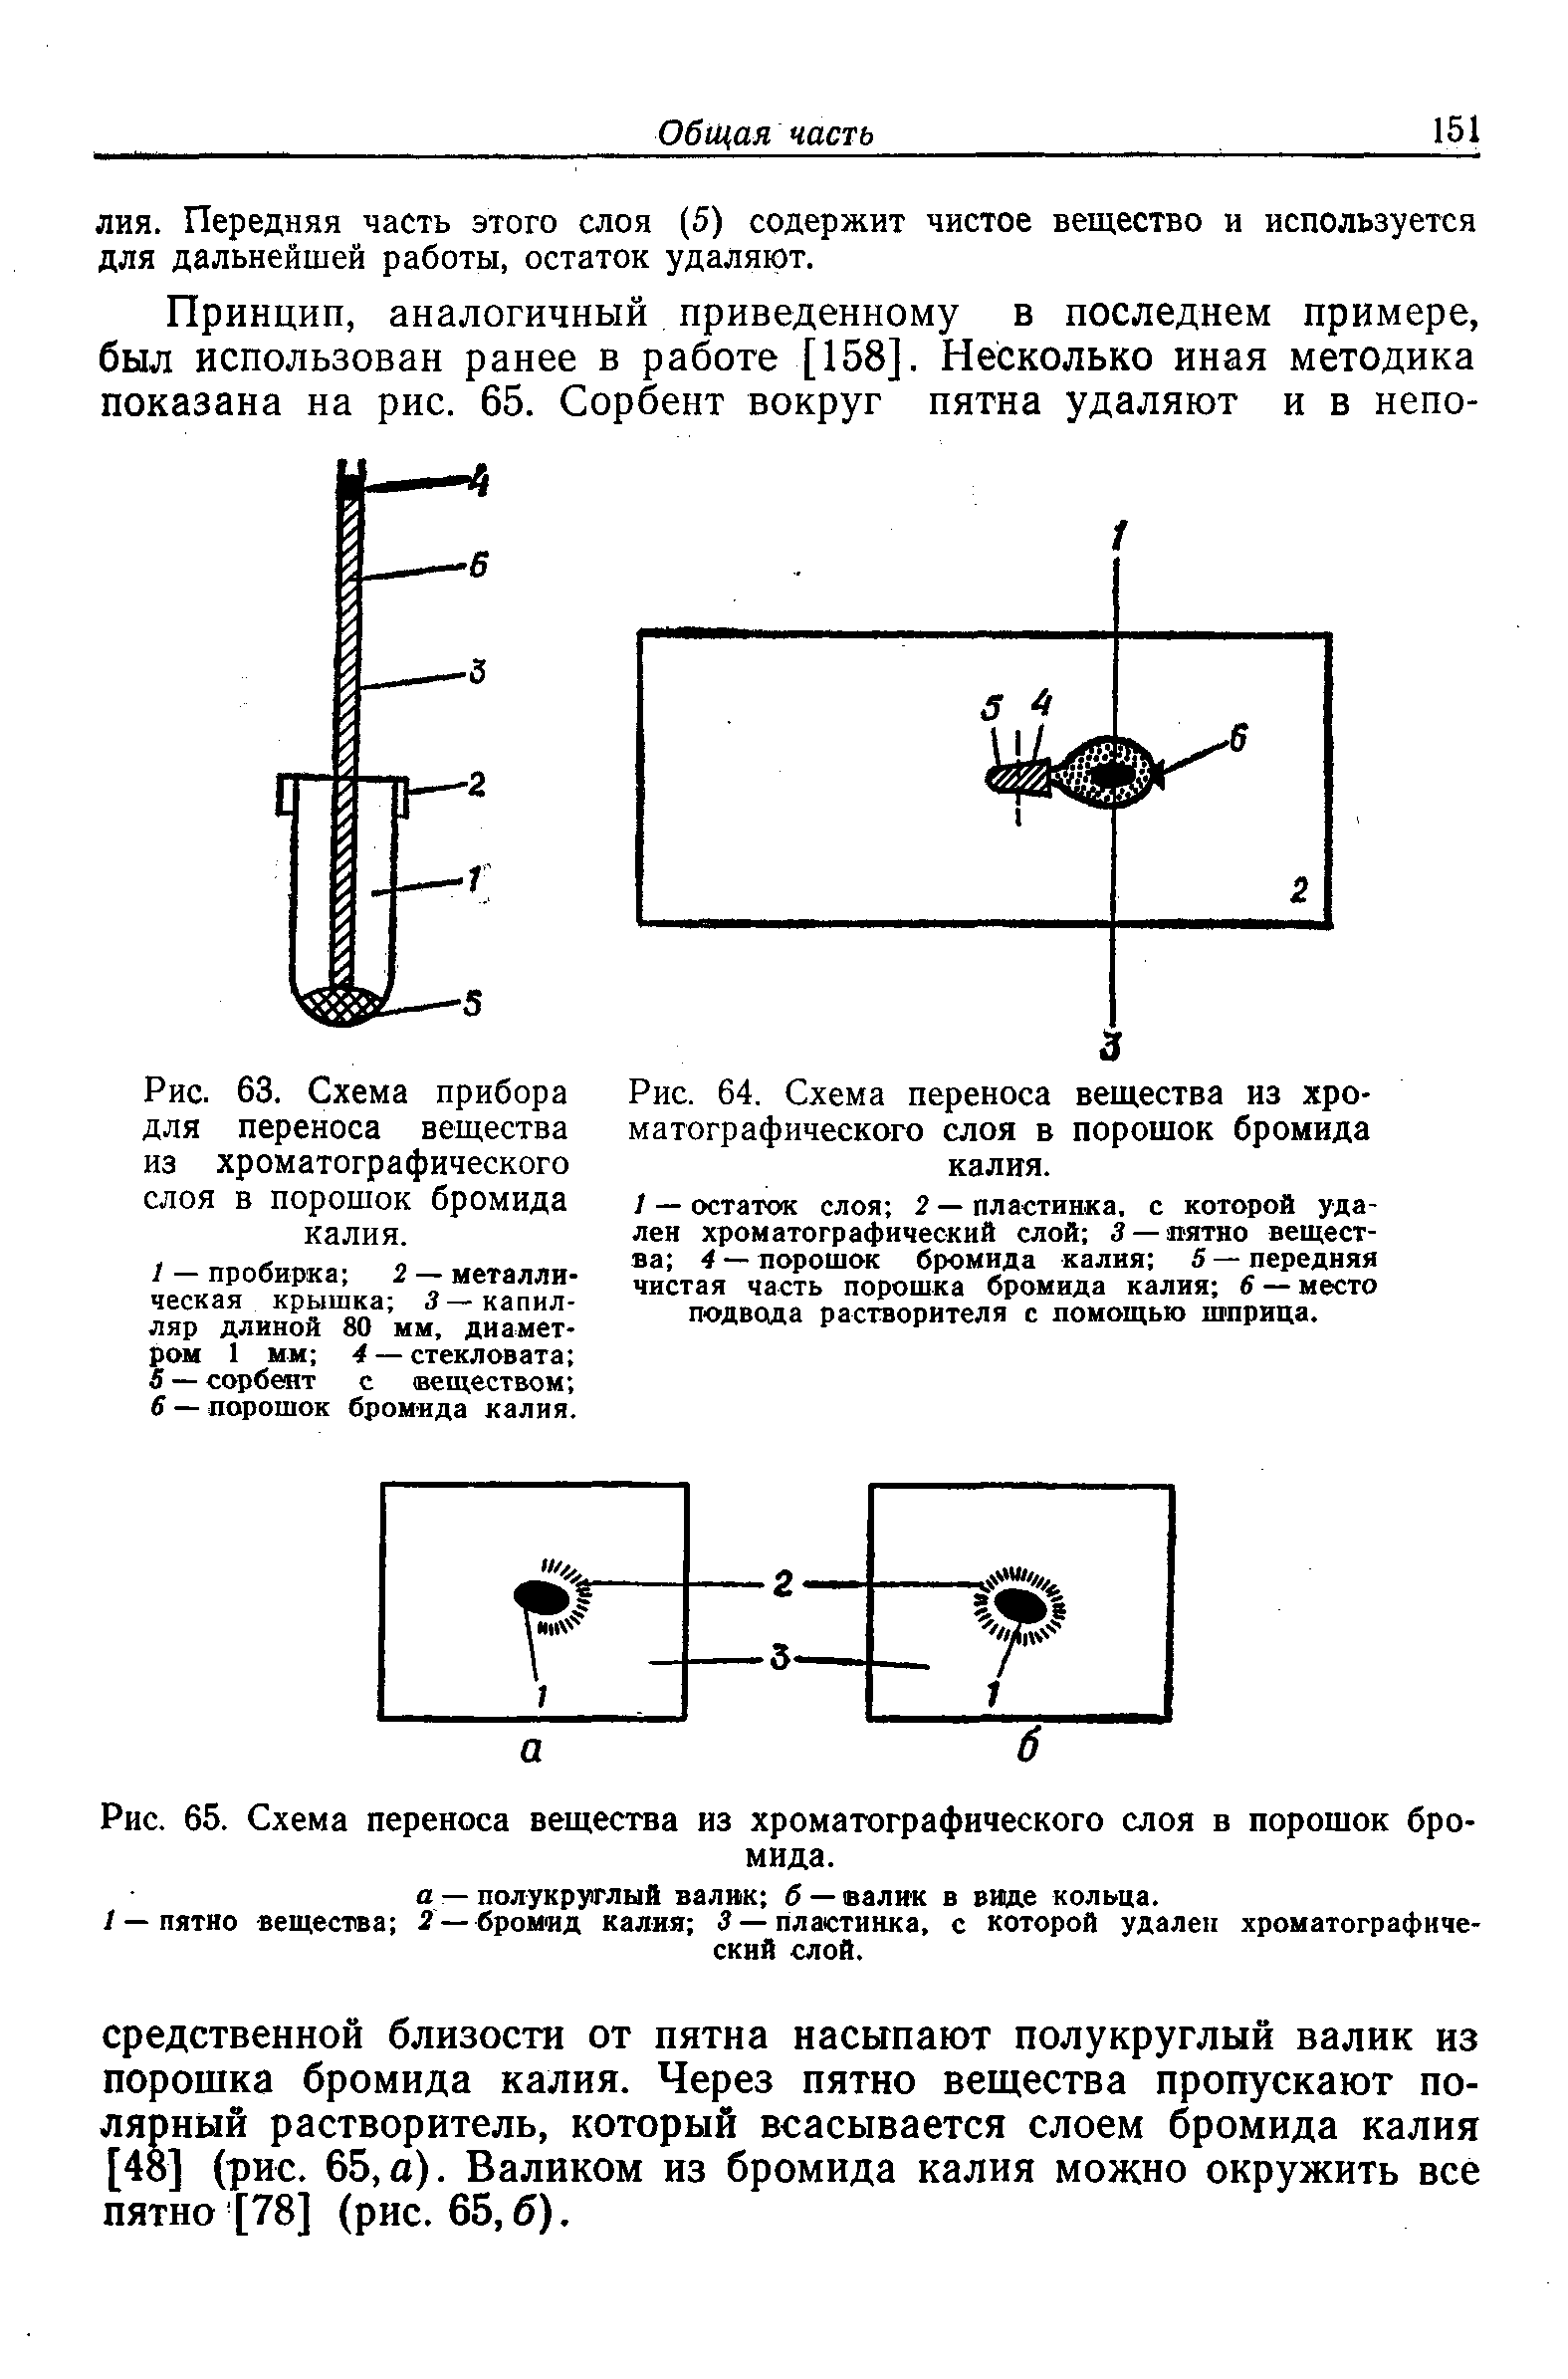 Рис. 63. Схема прибора для переноса вещества из хроматографического слоя в порошок бромида калия.